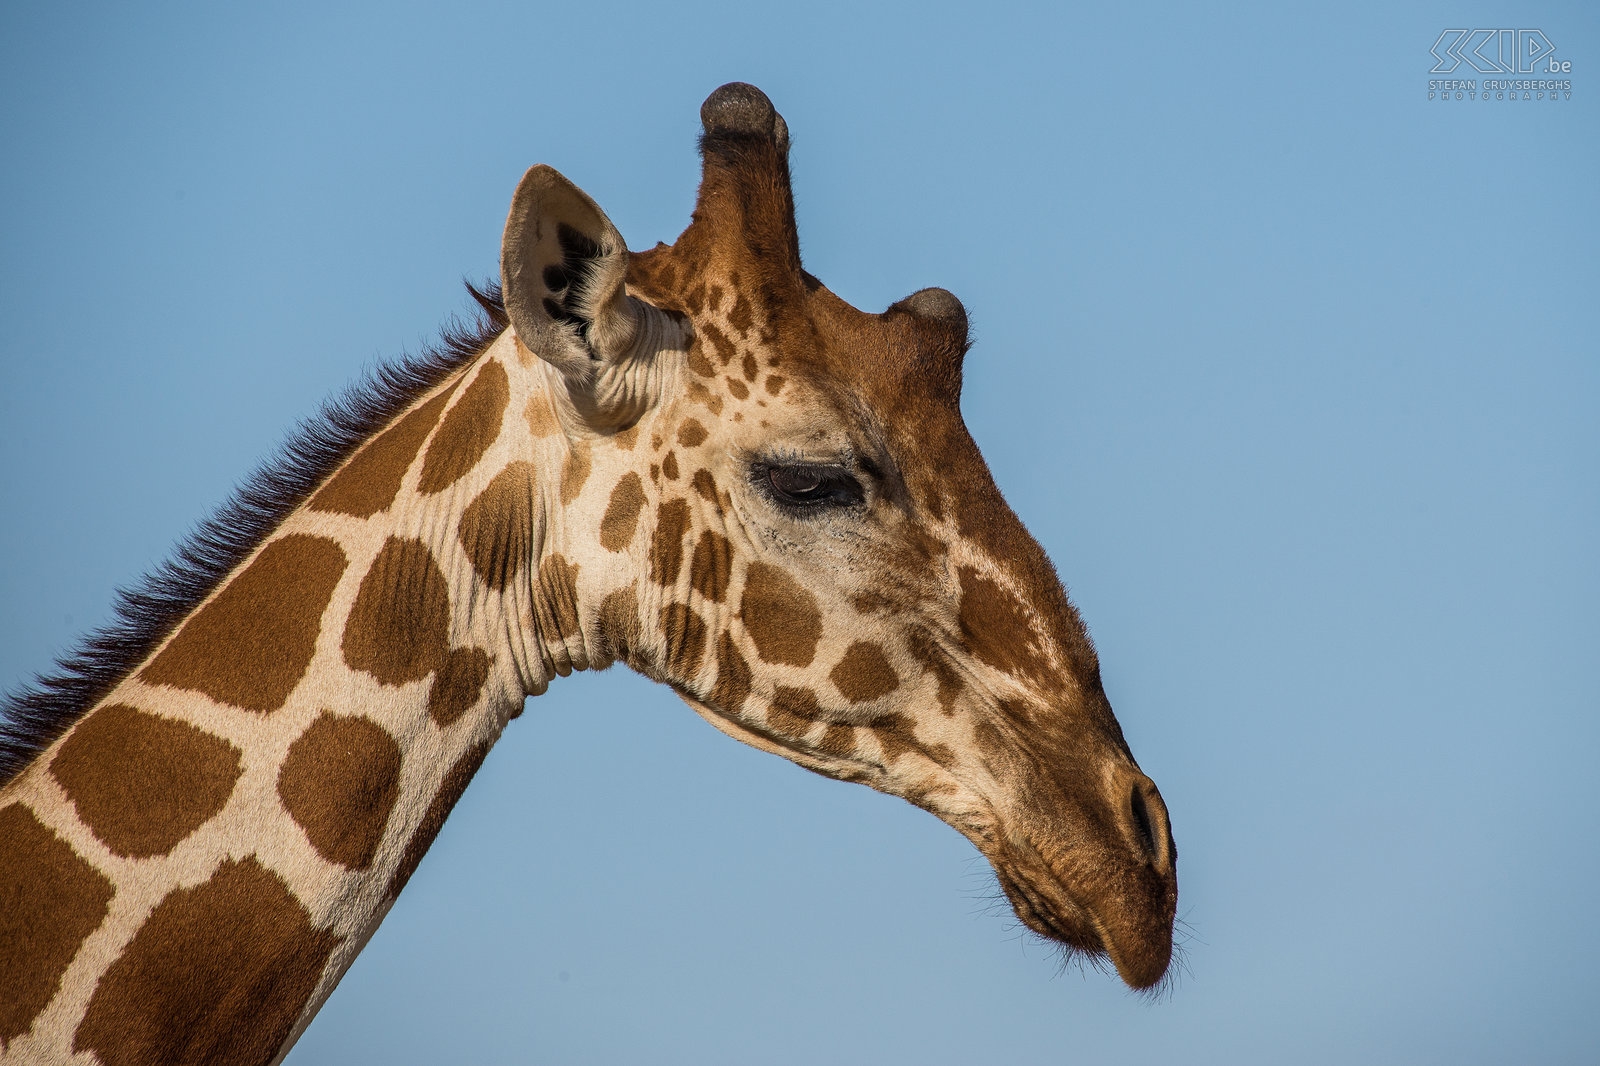 Samburu - Somali giraffe The reticulated giraffe is a subspecies of giraffe native to Somalia, southern Ethiopia and northern Kenya. Stefan Cruysberghs